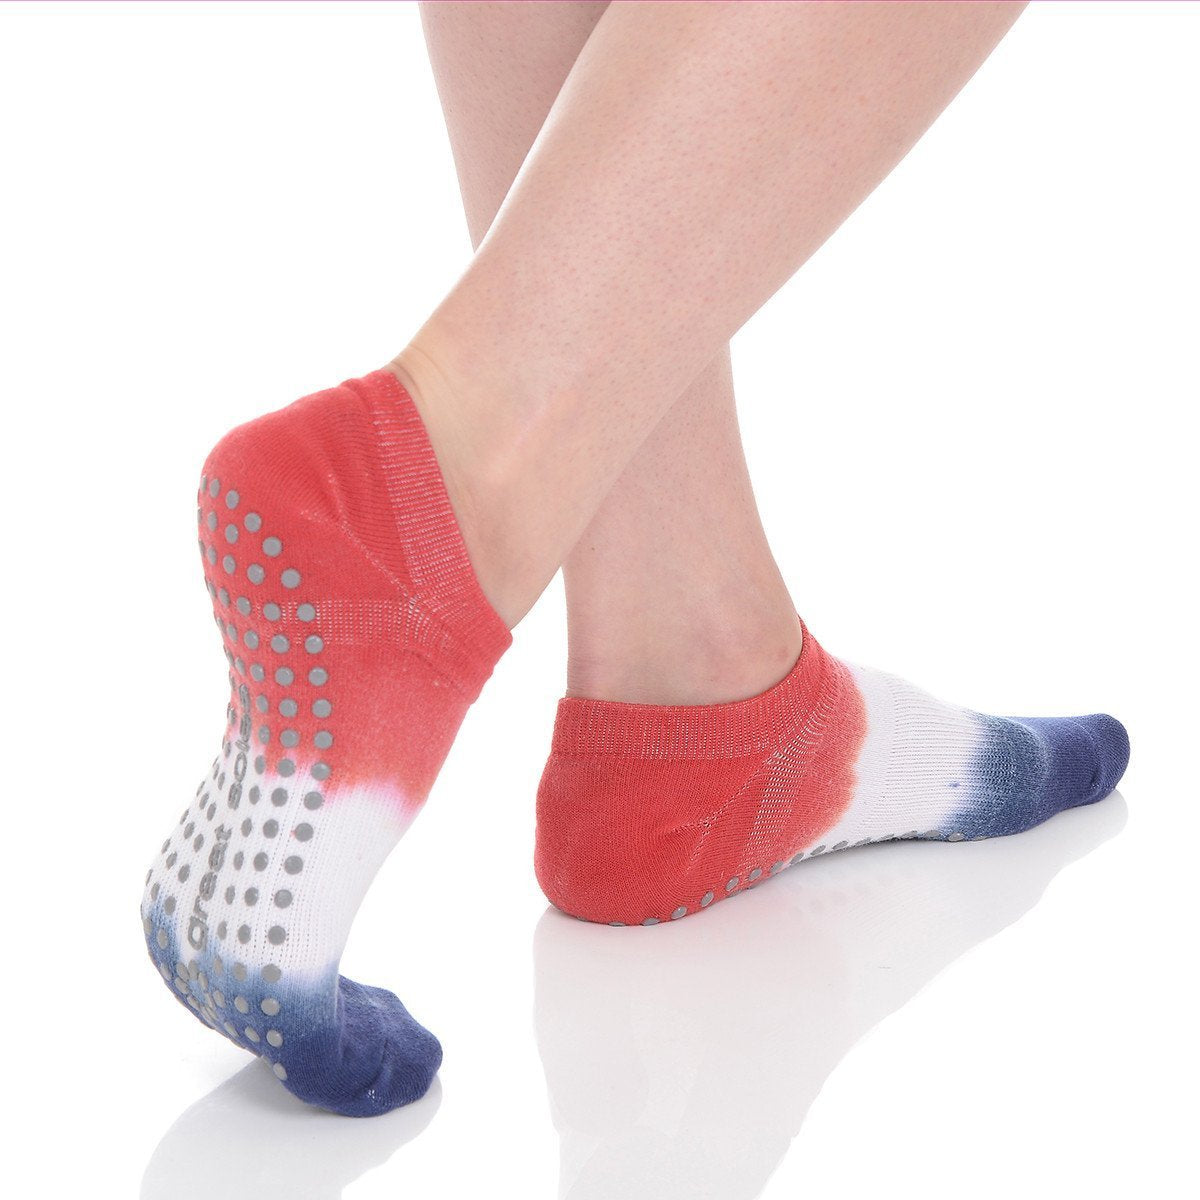 https://www.great-soles.com/cdn/shop/products/Lady-Liberty-Tie-Dye-Non-Slip-Grip-SportSock-Walking-Dance-Barre_1200x.jpg?v=1653409221